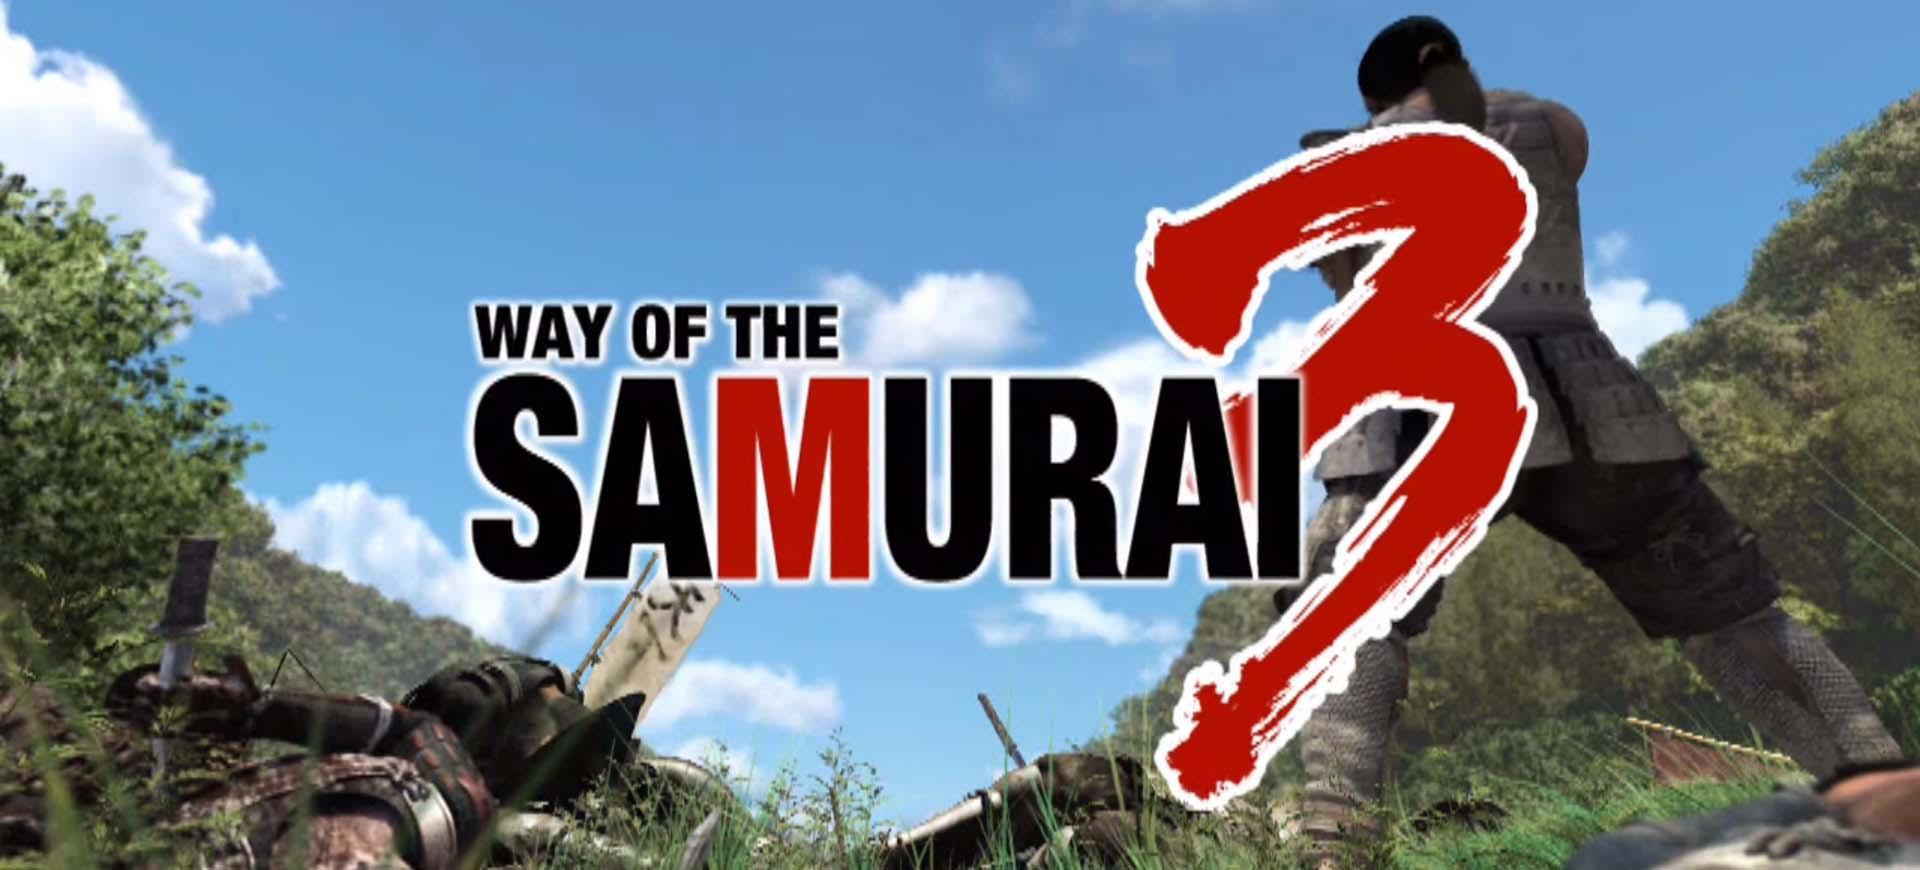 Way of the Samurai 3 hé lộ ngày đặt chân lên